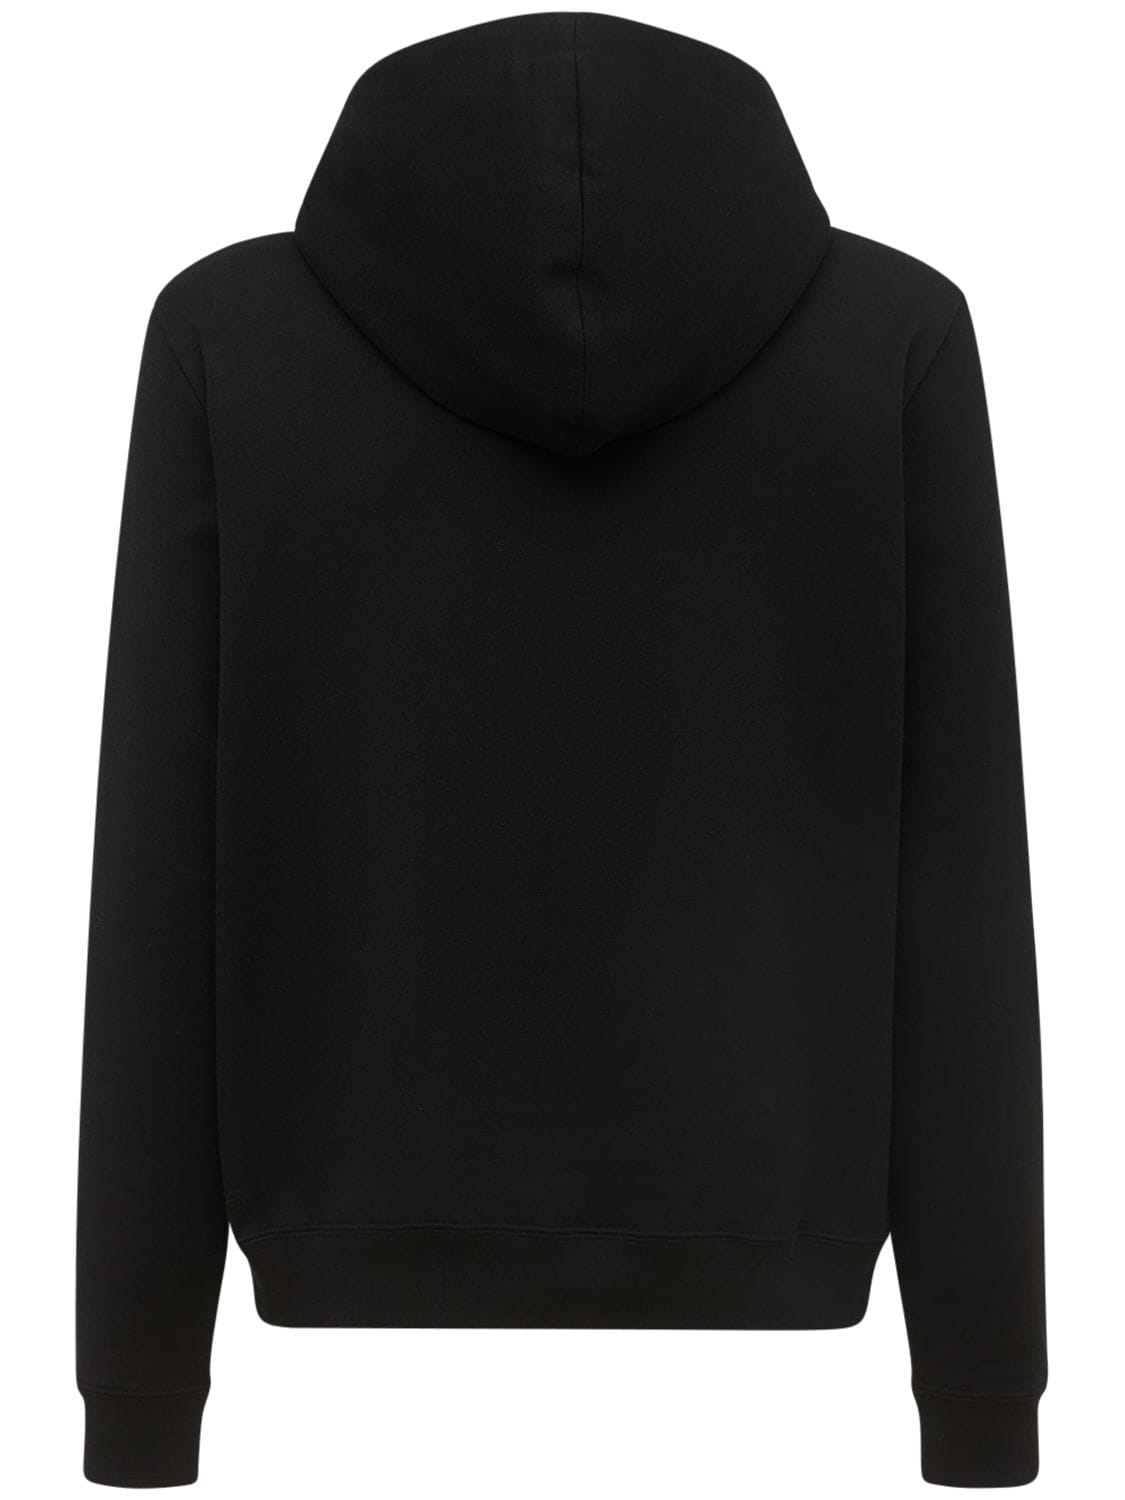 Shop Saint Laurent Cotton Sweatshirt Hoodie In Black